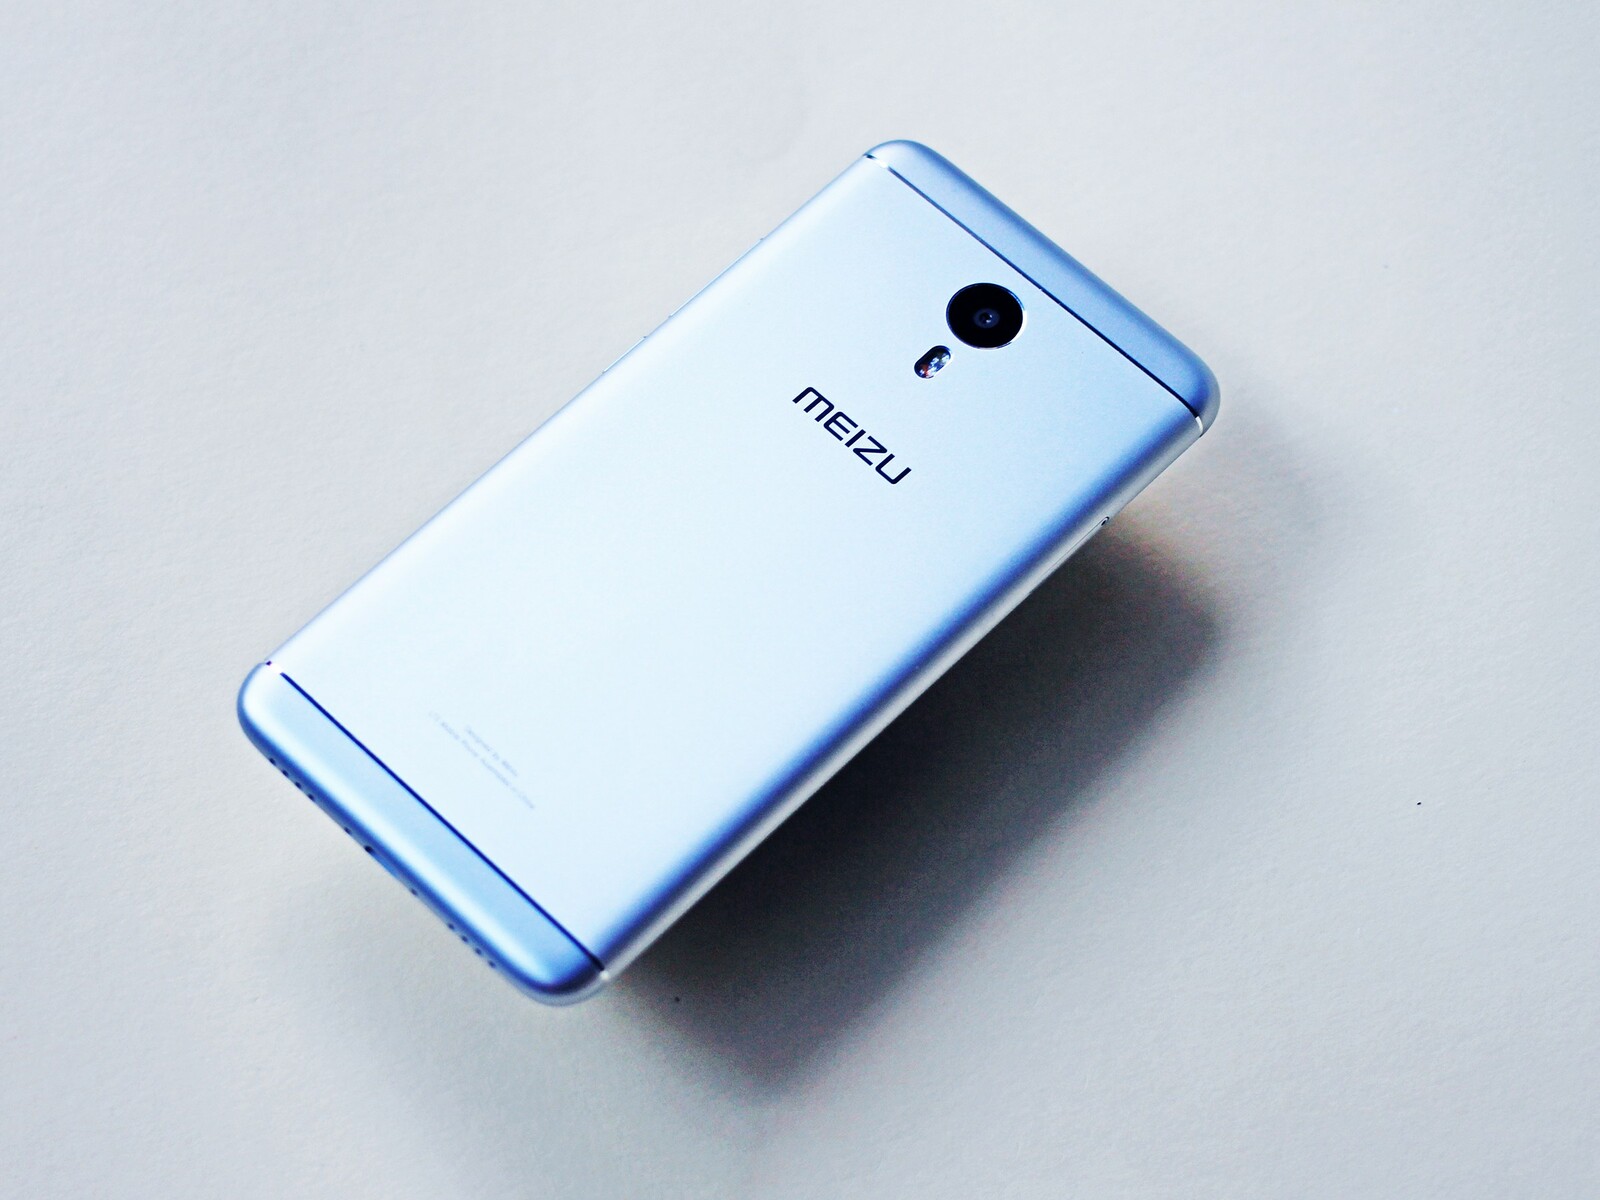 The best Meizu phones: